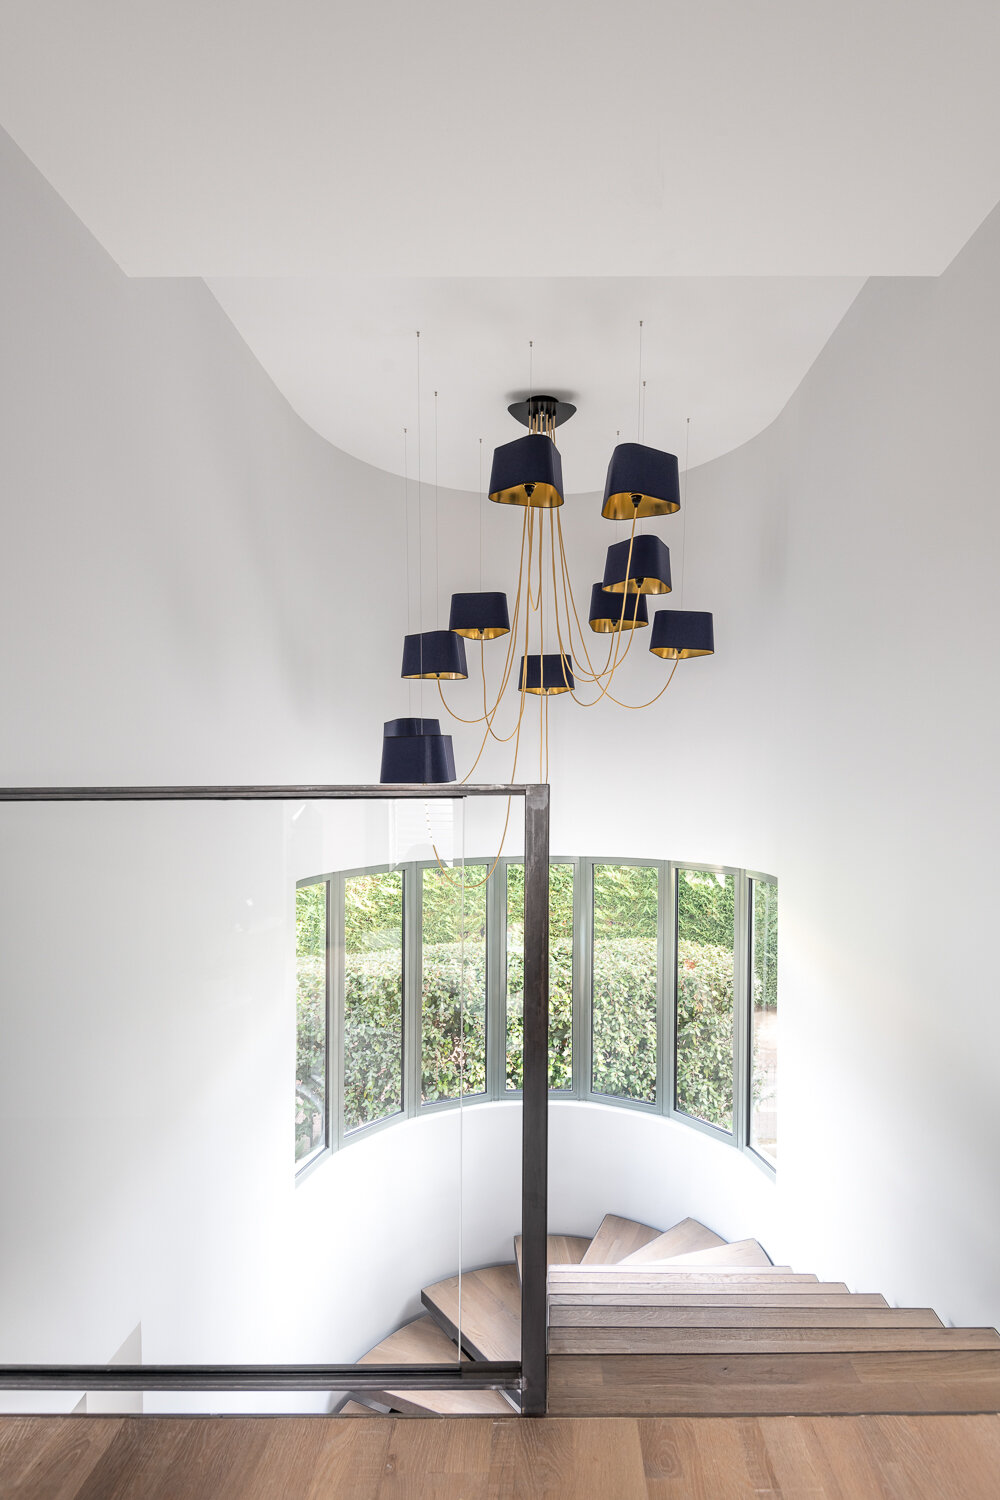 Escalier-luminaire-nuage-designheure-bleu-dore-architecte-interieur-cote d'azur-nice.jpg